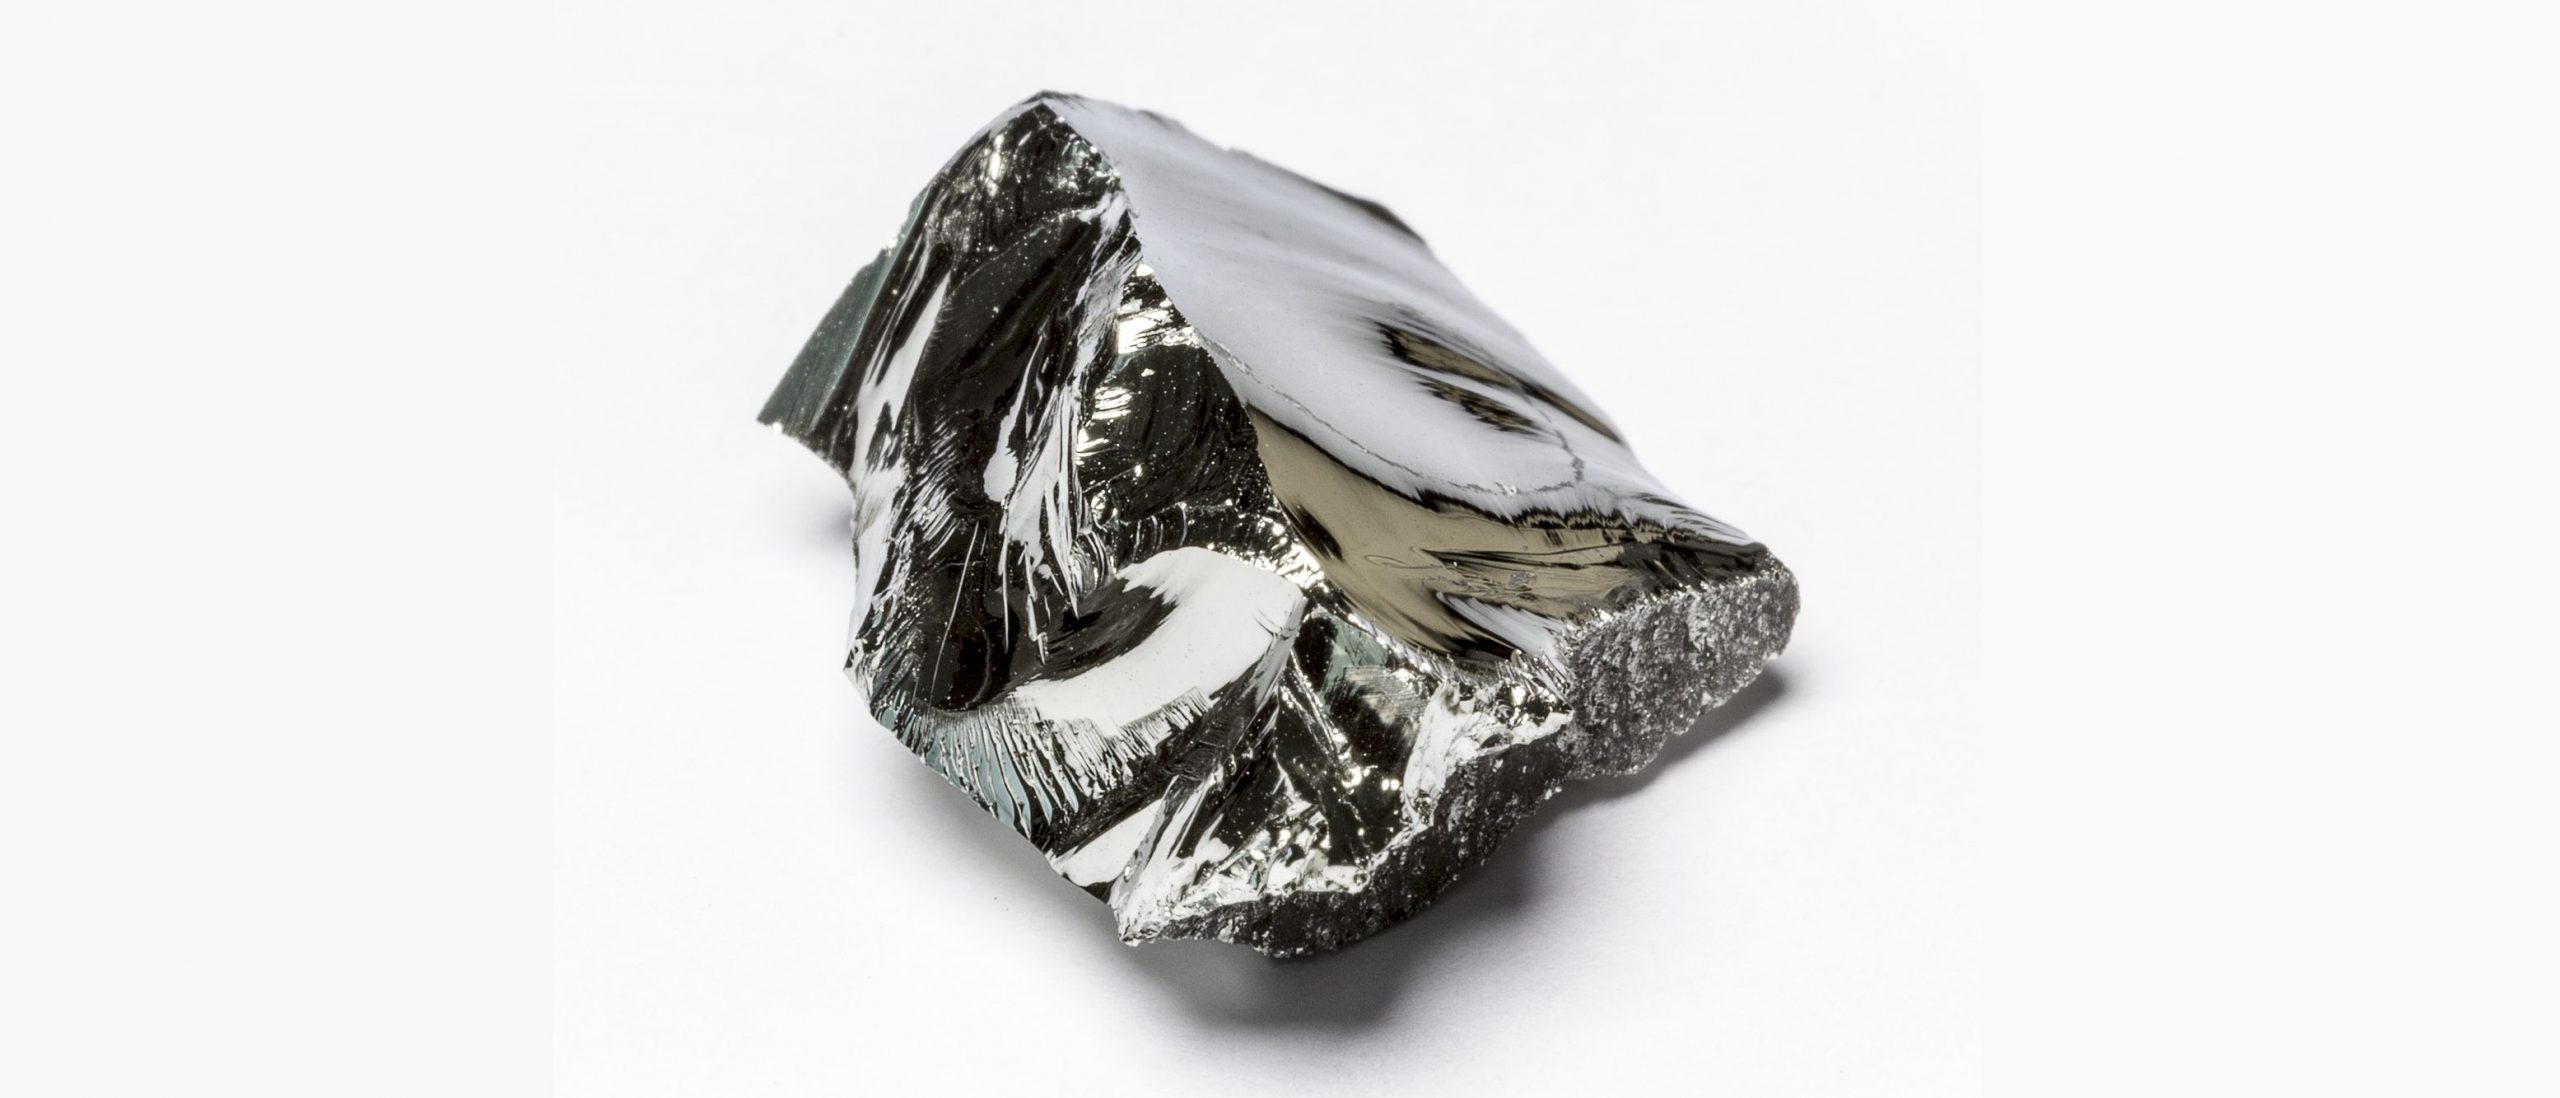 حقایقی جالب در خصوص فلز ژرمانیوم